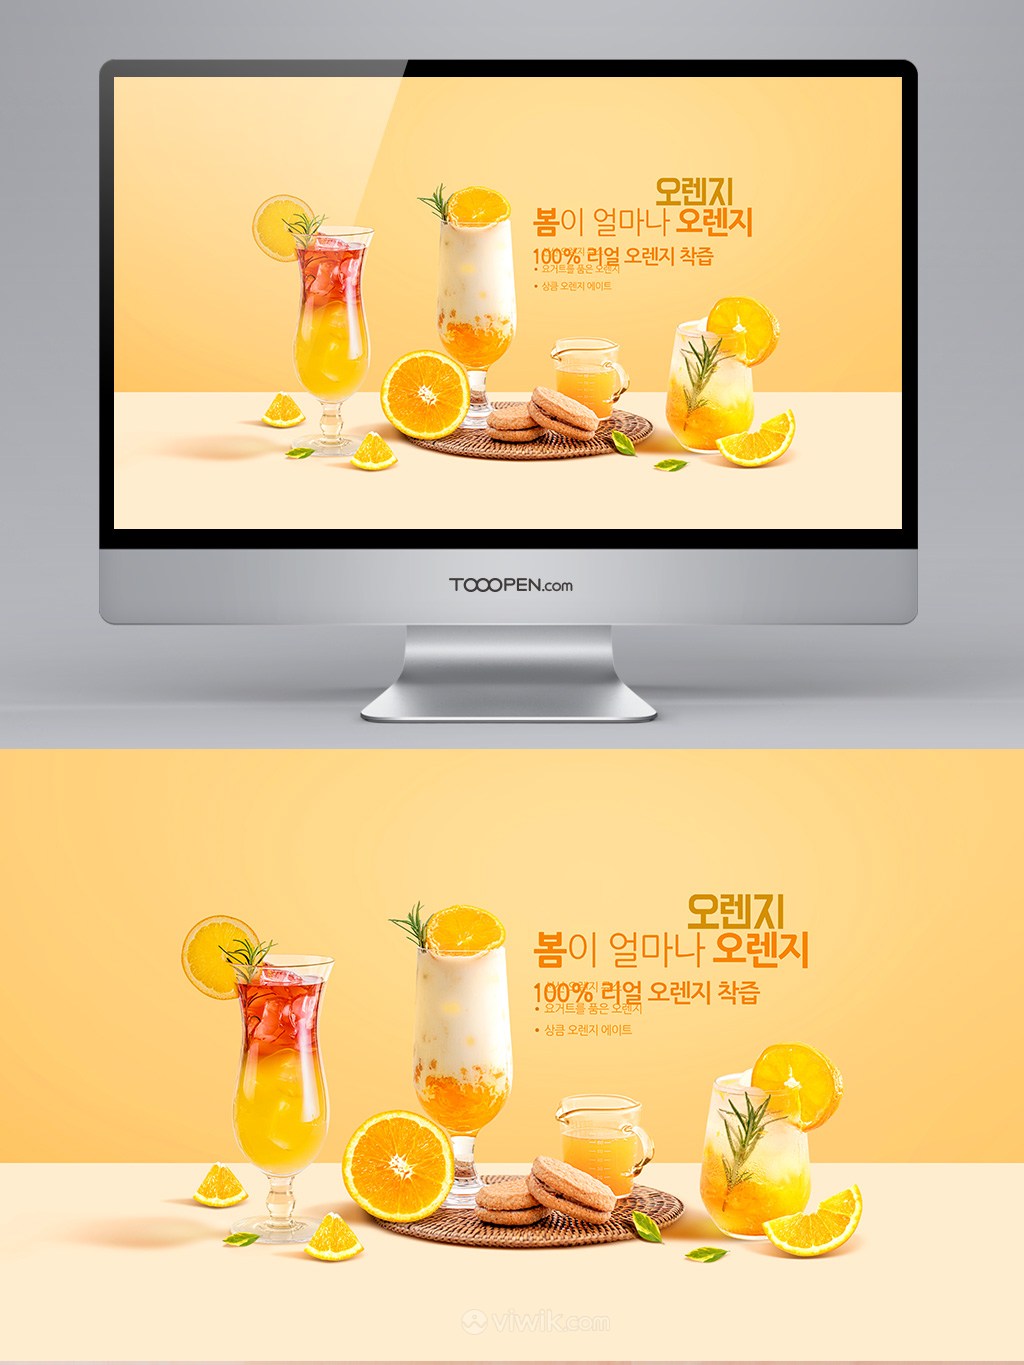 夏日甜橙果汁饮品广告banner设计模板